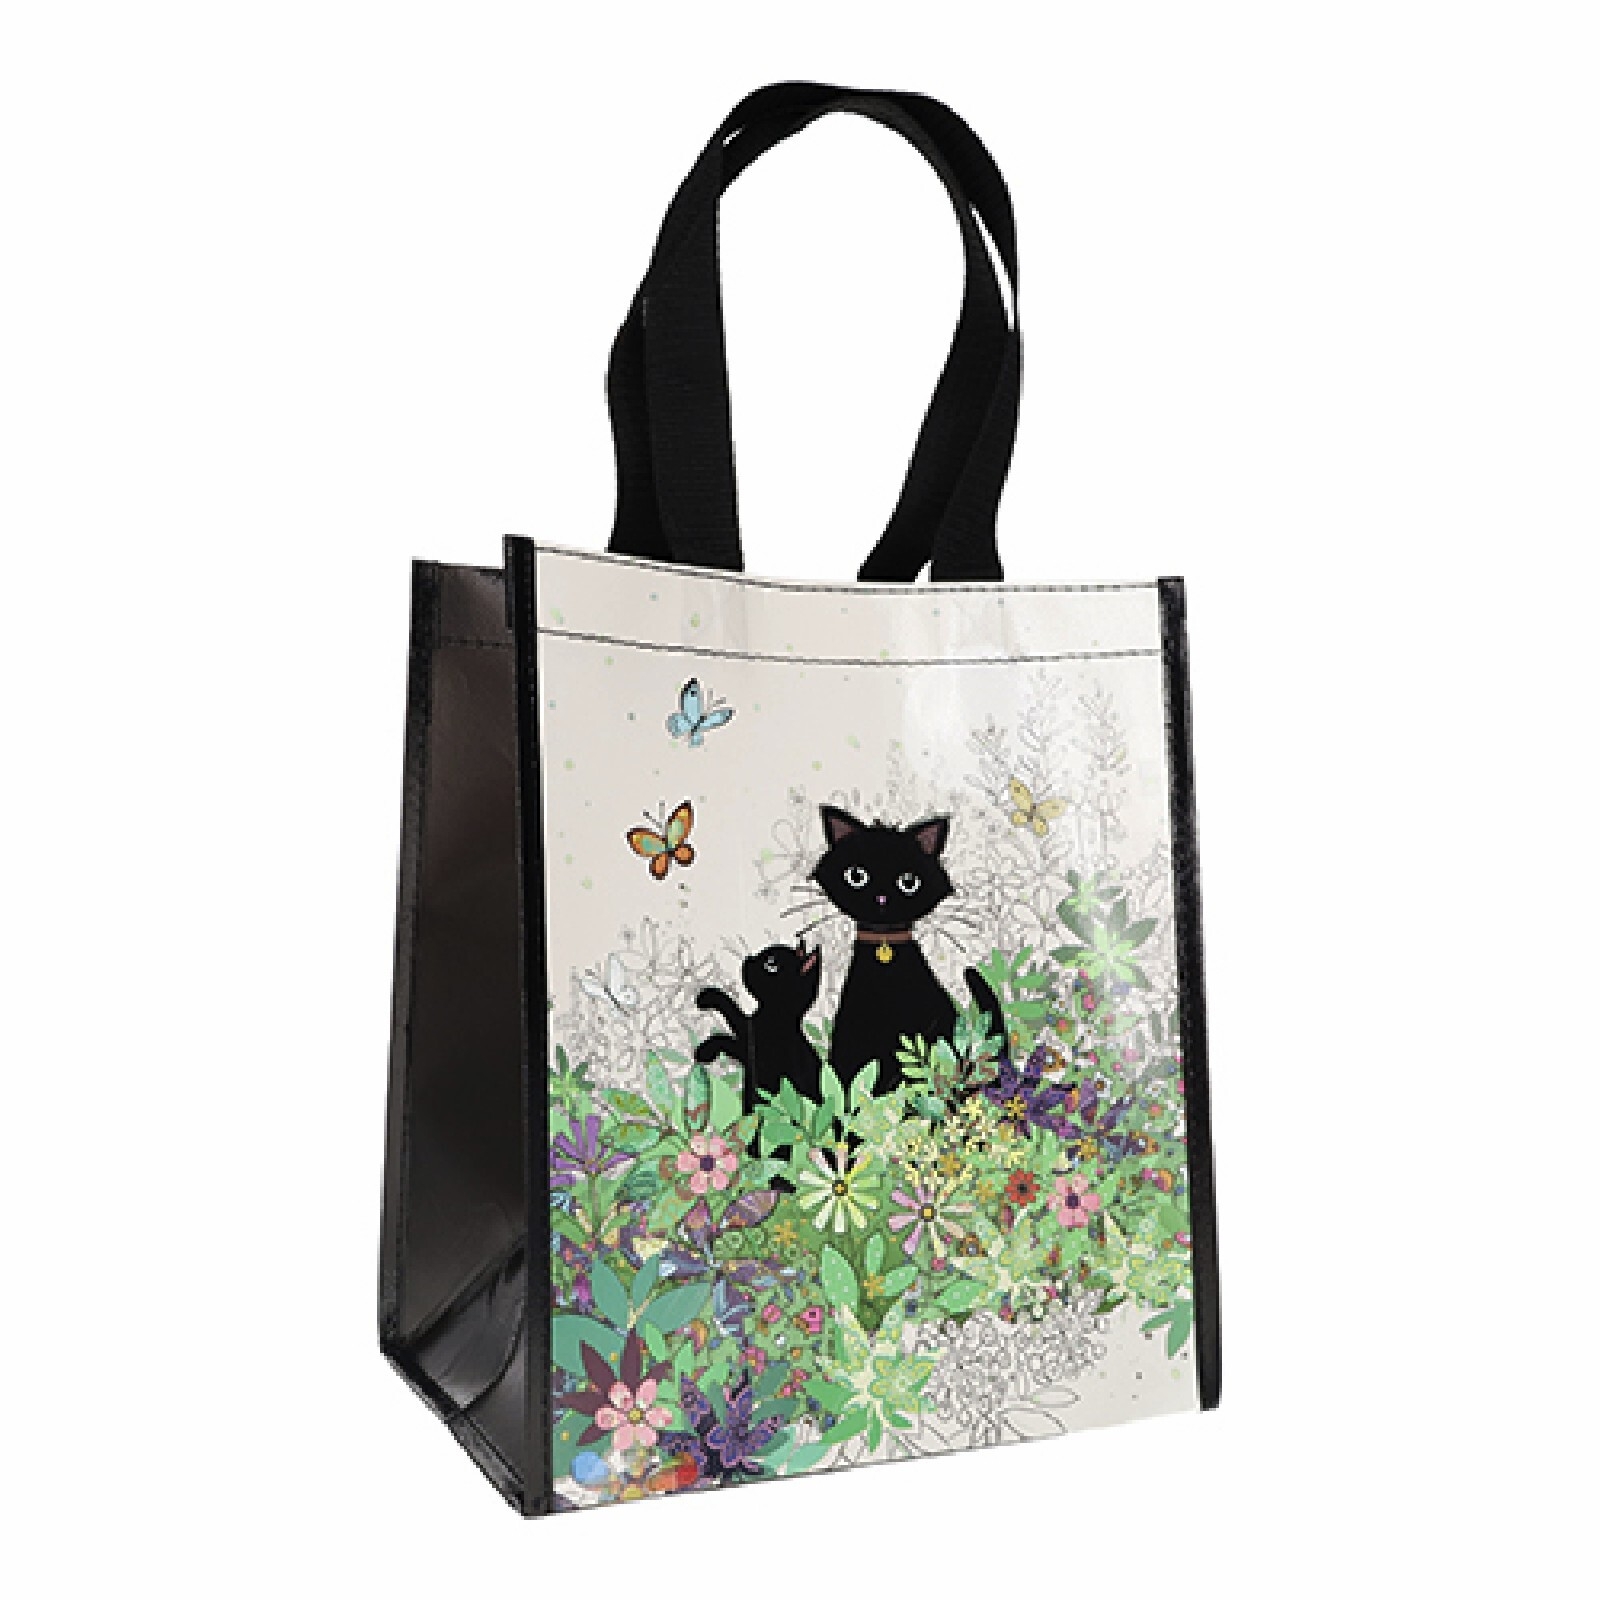 kiub sacchetto di plastica riciclata per il trasporto di gattini da giardino bug art donna